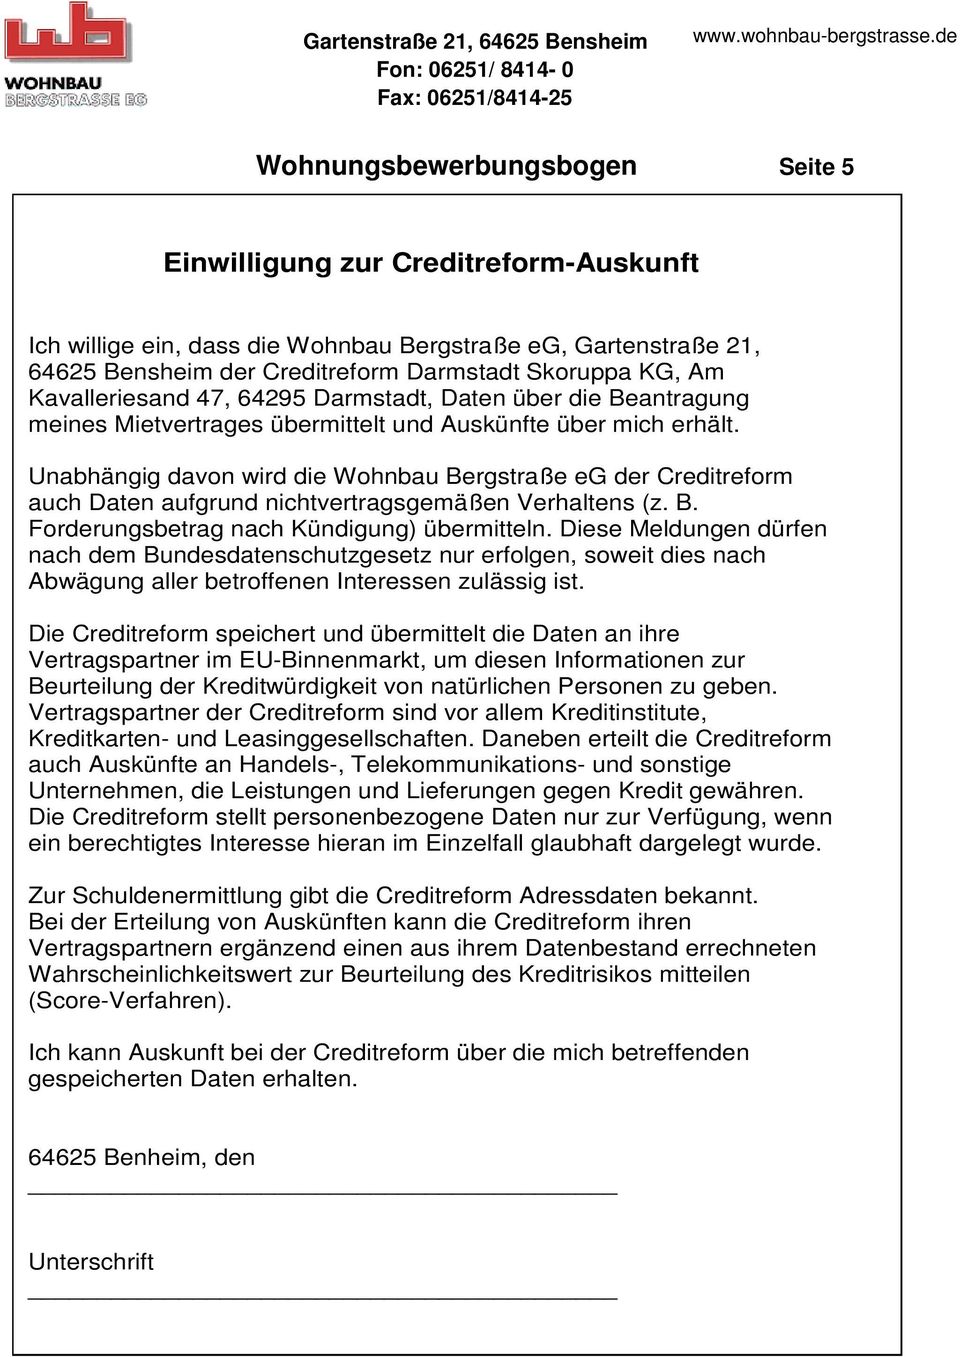 Unabhängig davon wird die Wohnbau Bergstraße eg der Creditreform auch Daten aufgrund nichtvertragsgemäßen Verhaltens (z. B. Forderungsbetrag nach Kündigung) übermitteln.